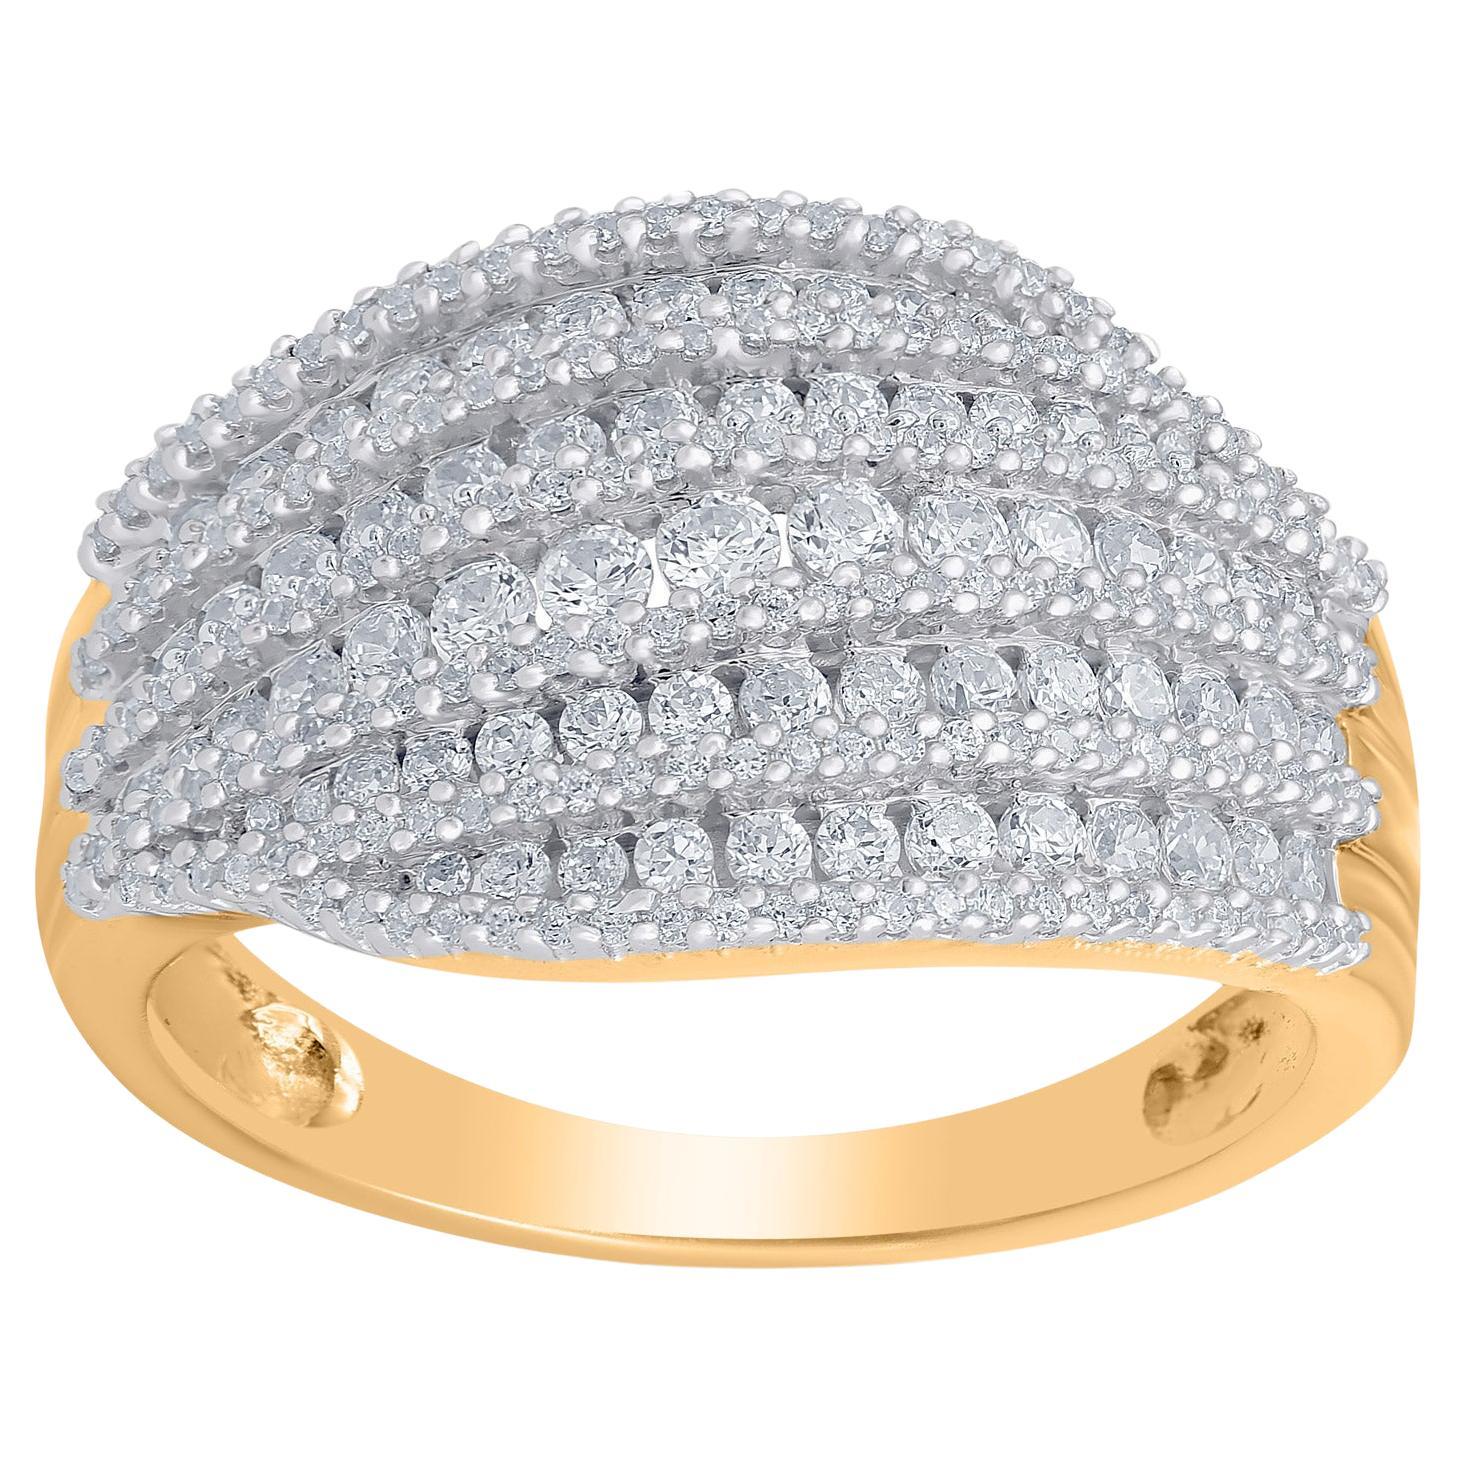 TJD 1.0 Carat Natural Round Diamond 14 Karat Yellow Gold Wedding Band Ring For Sale